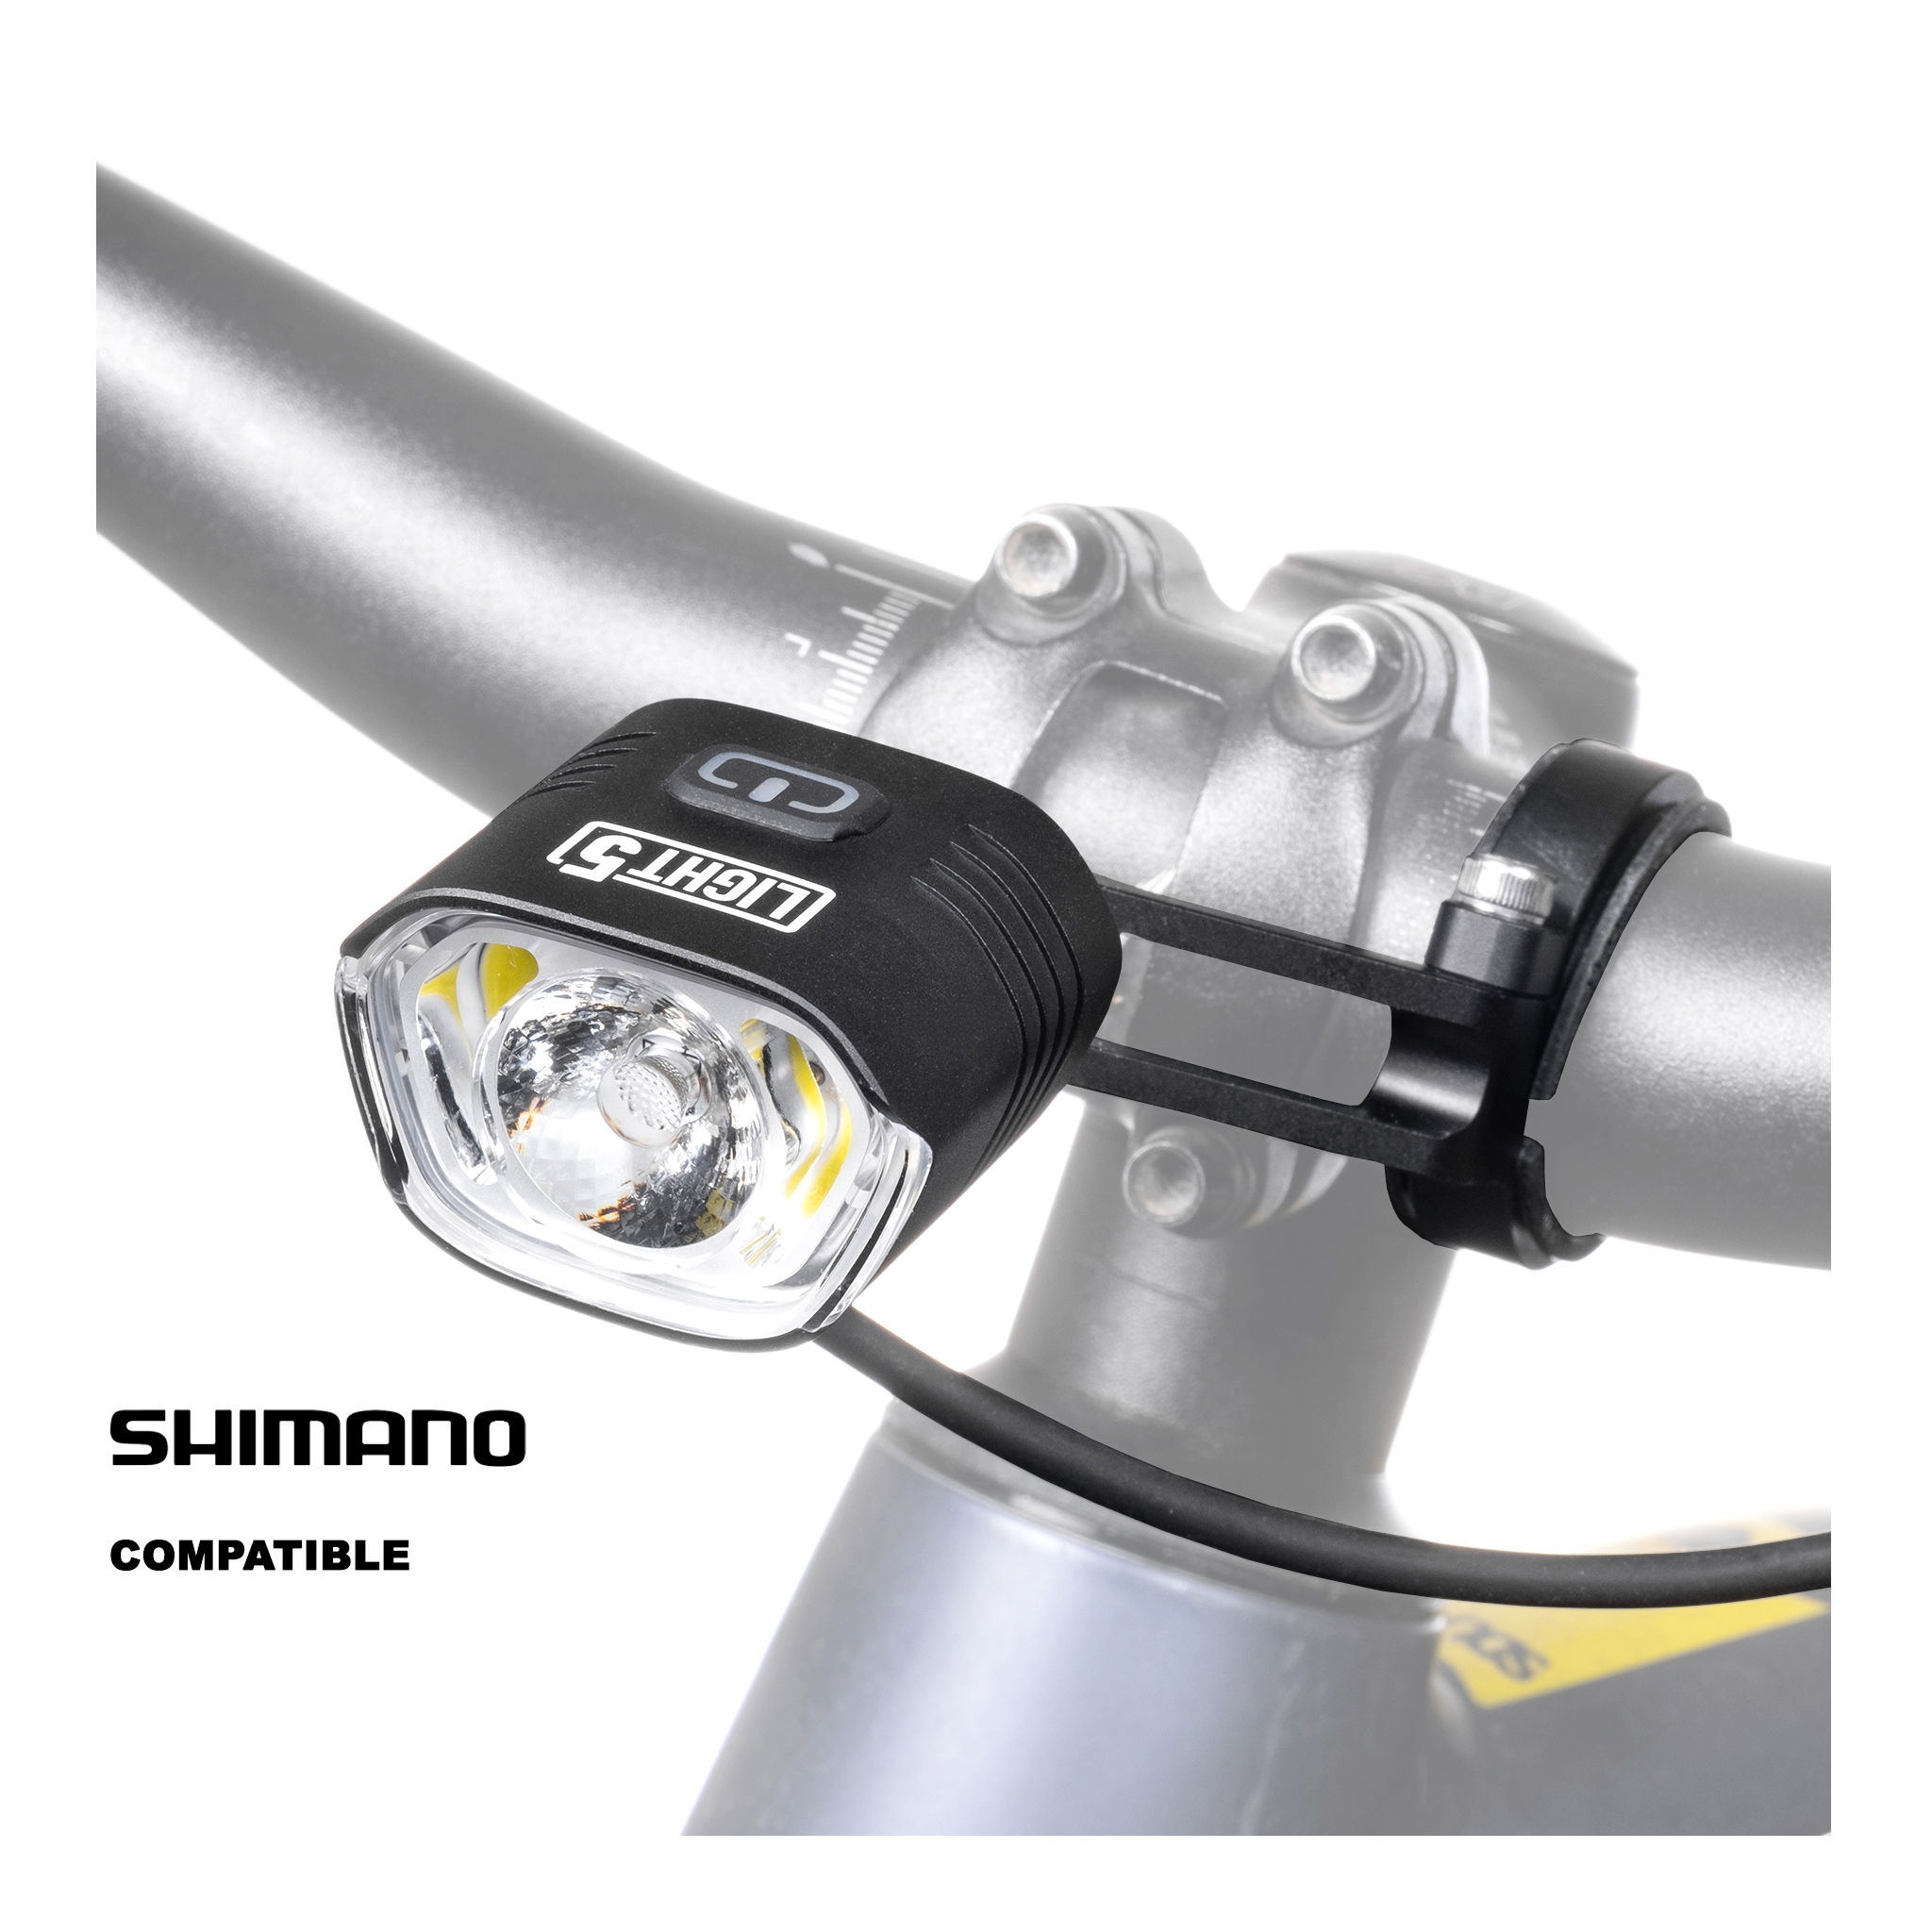 Cykellampa för elcykel Light5 EB1000 Shimano, 1000 lm, Shimano